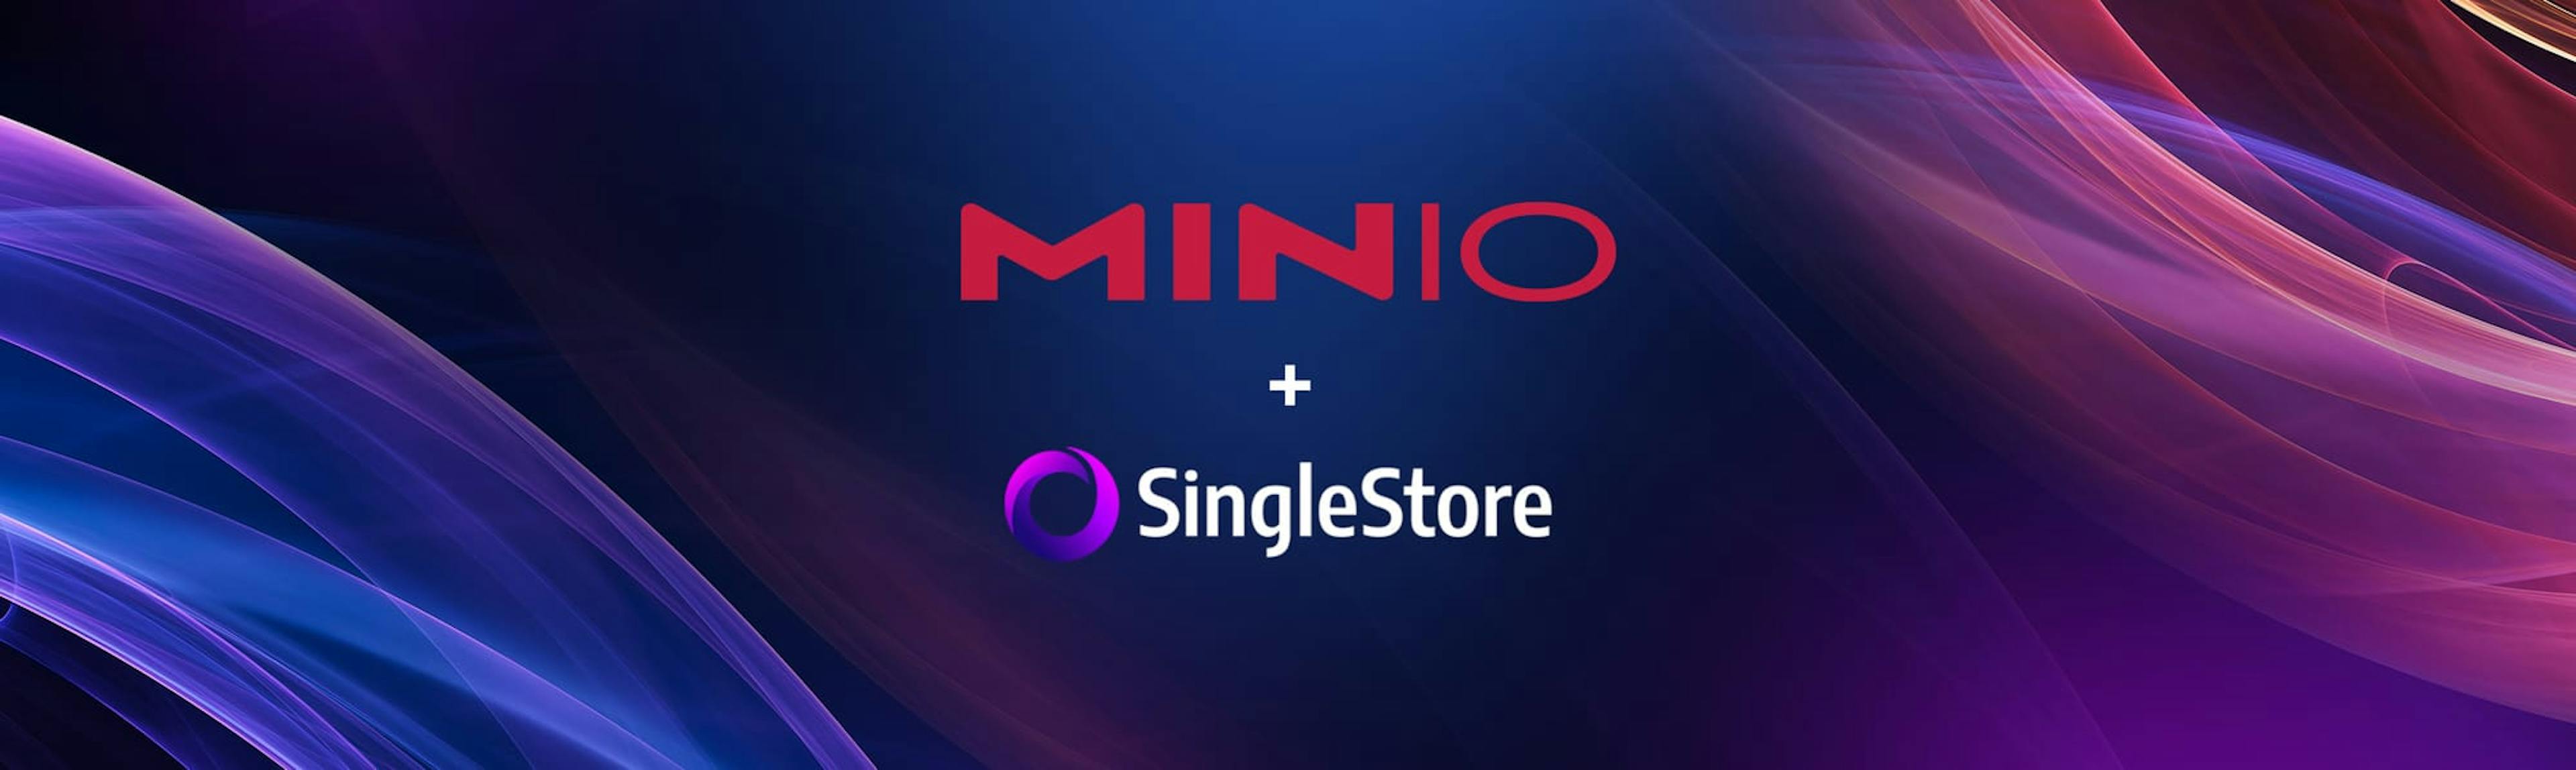 featured image - Phát triển các giải pháp dữ liệu thế hệ tiếp theo: SingleStore, MinIO và Datalake Stack hiện đại